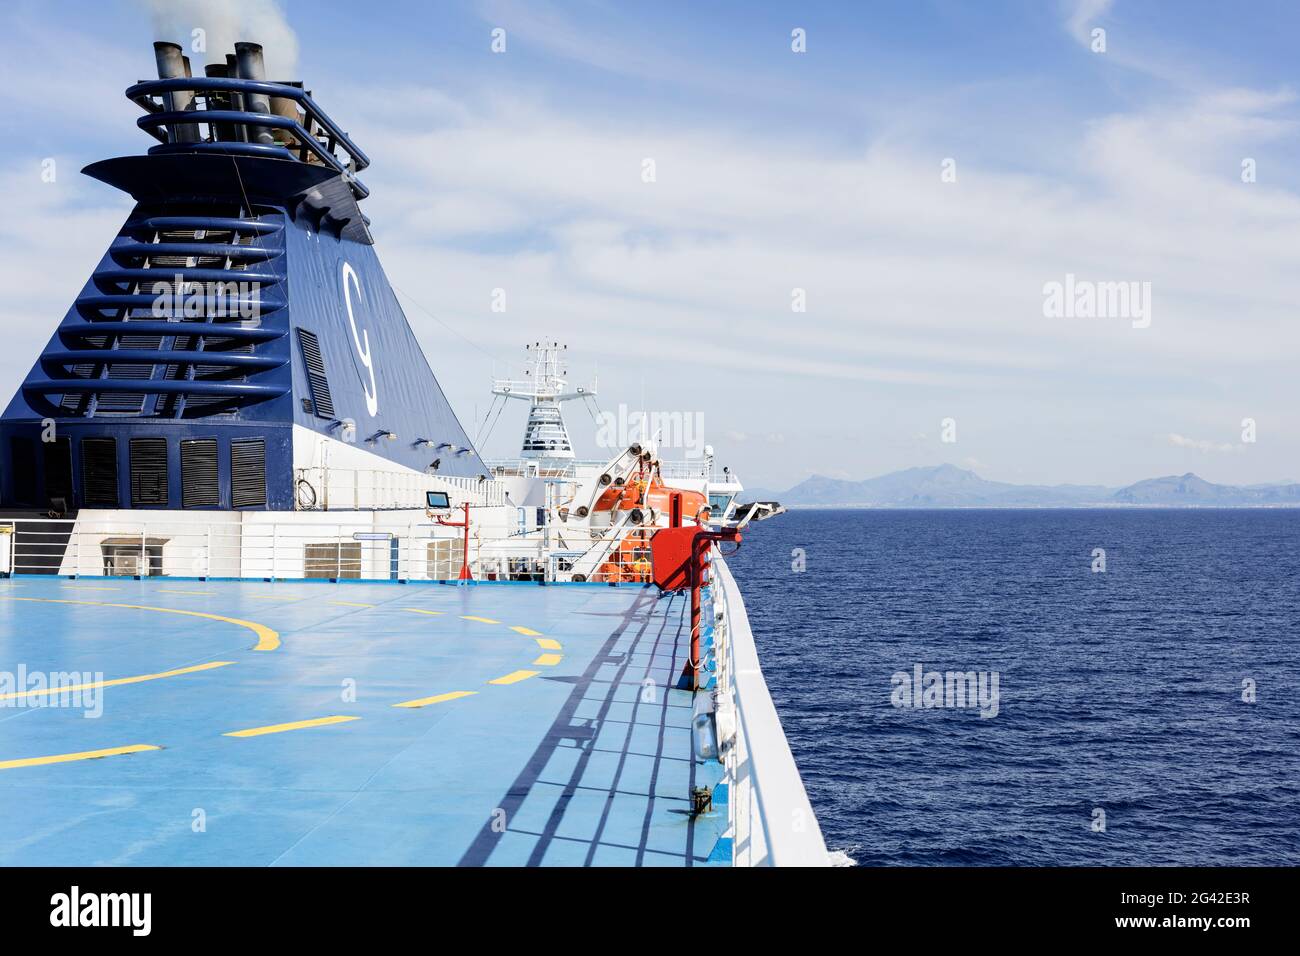 Traghetti palermo immagini e fotografie stock ad alta risoluzione - Alamy